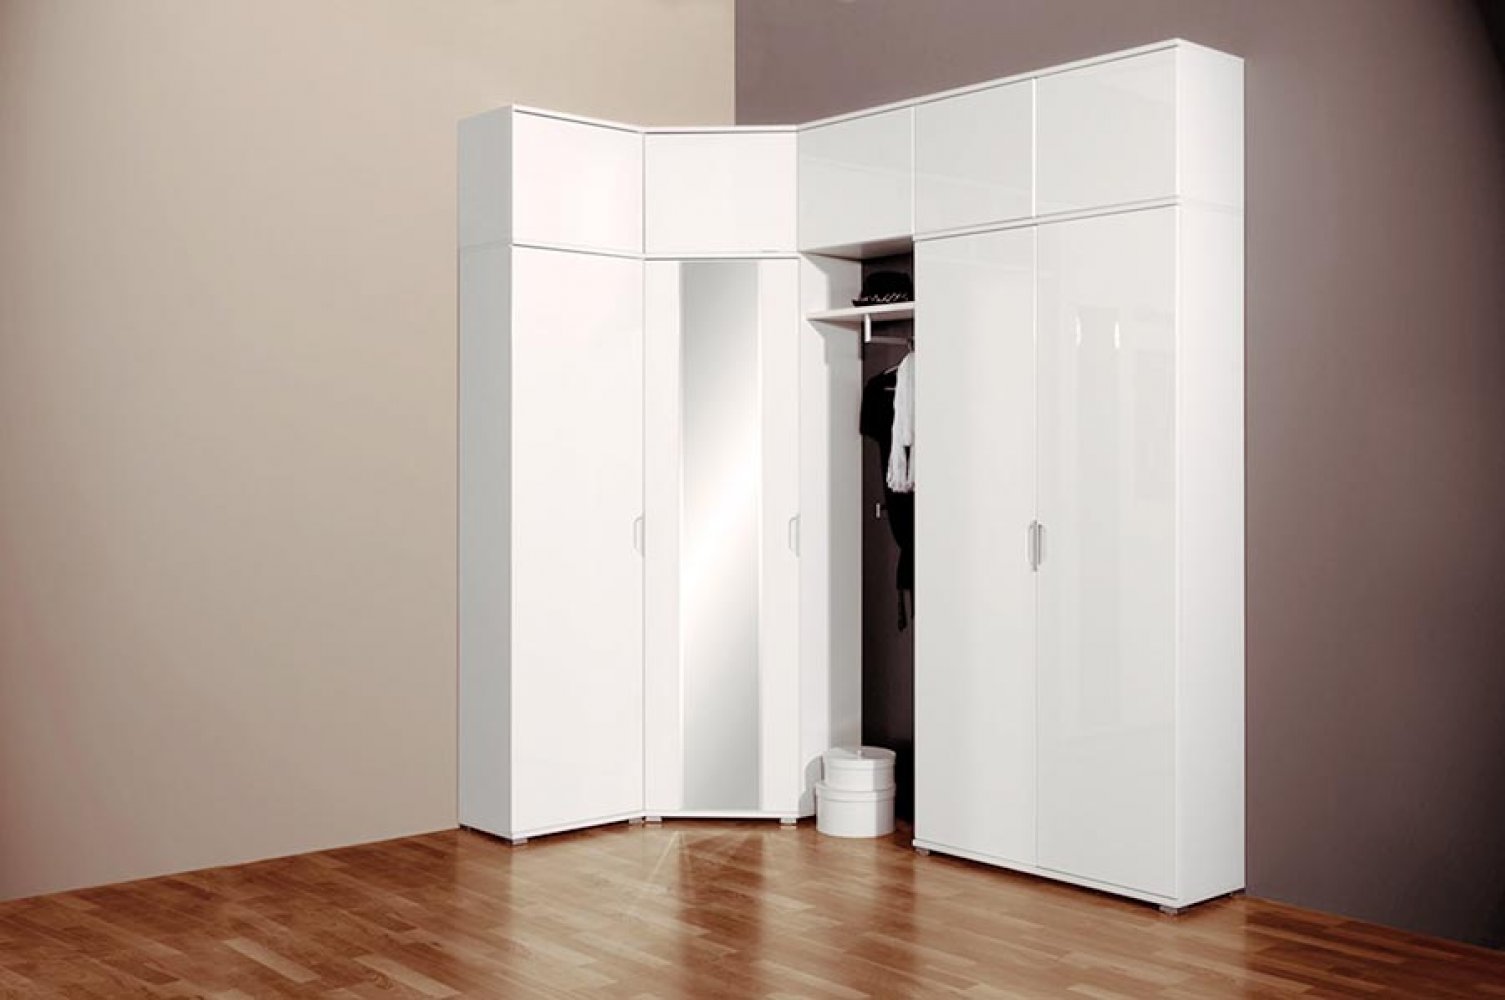 Белые угловые шкафы для спальни: матовый вариант и глянец, распашные модели с зеркалом — популярные цвета